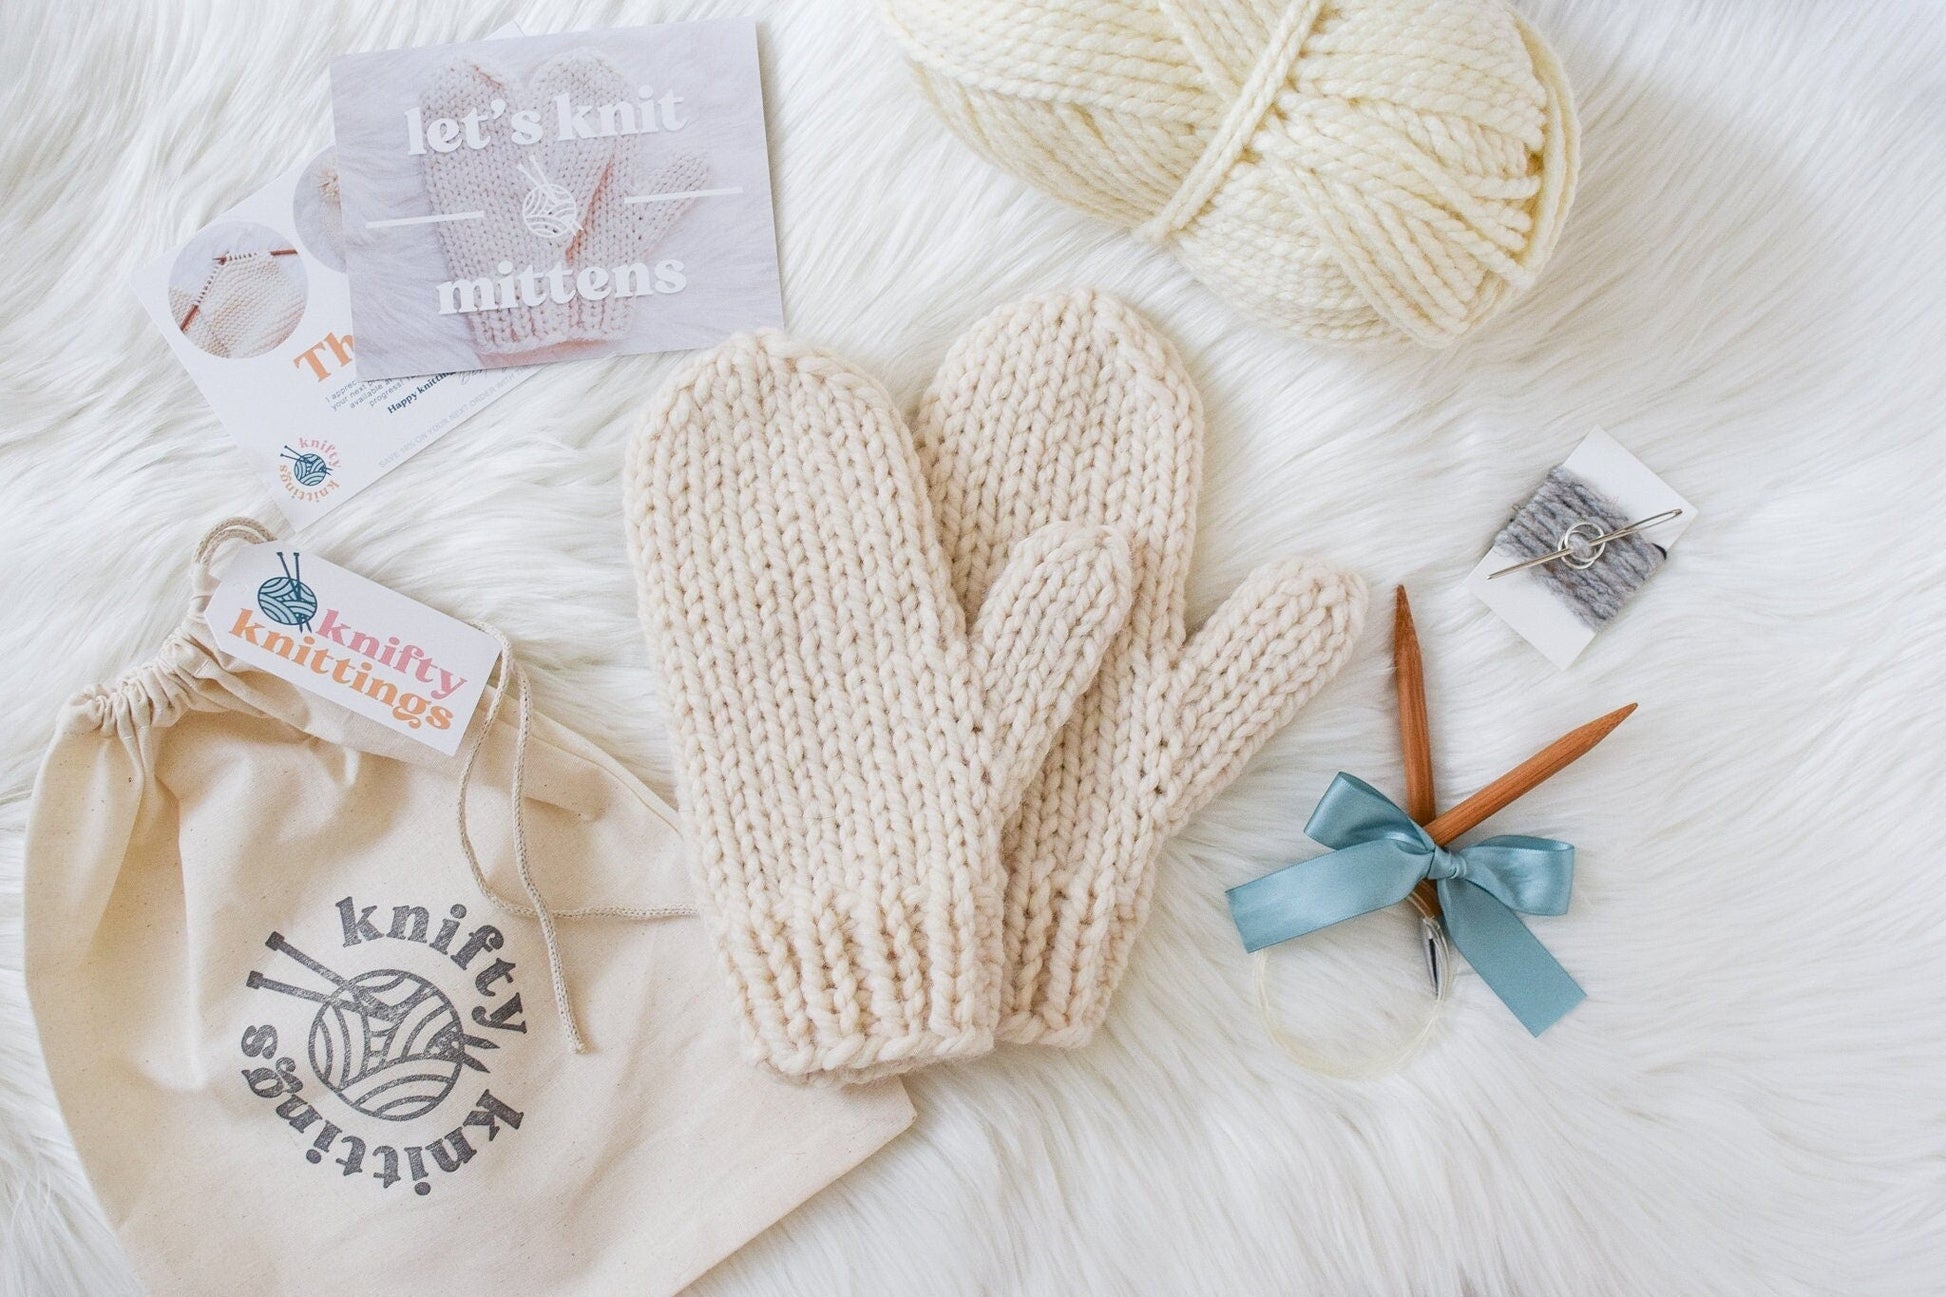 Scarf Knitting Kit - Beginner knitting kit from Knifty Knittings